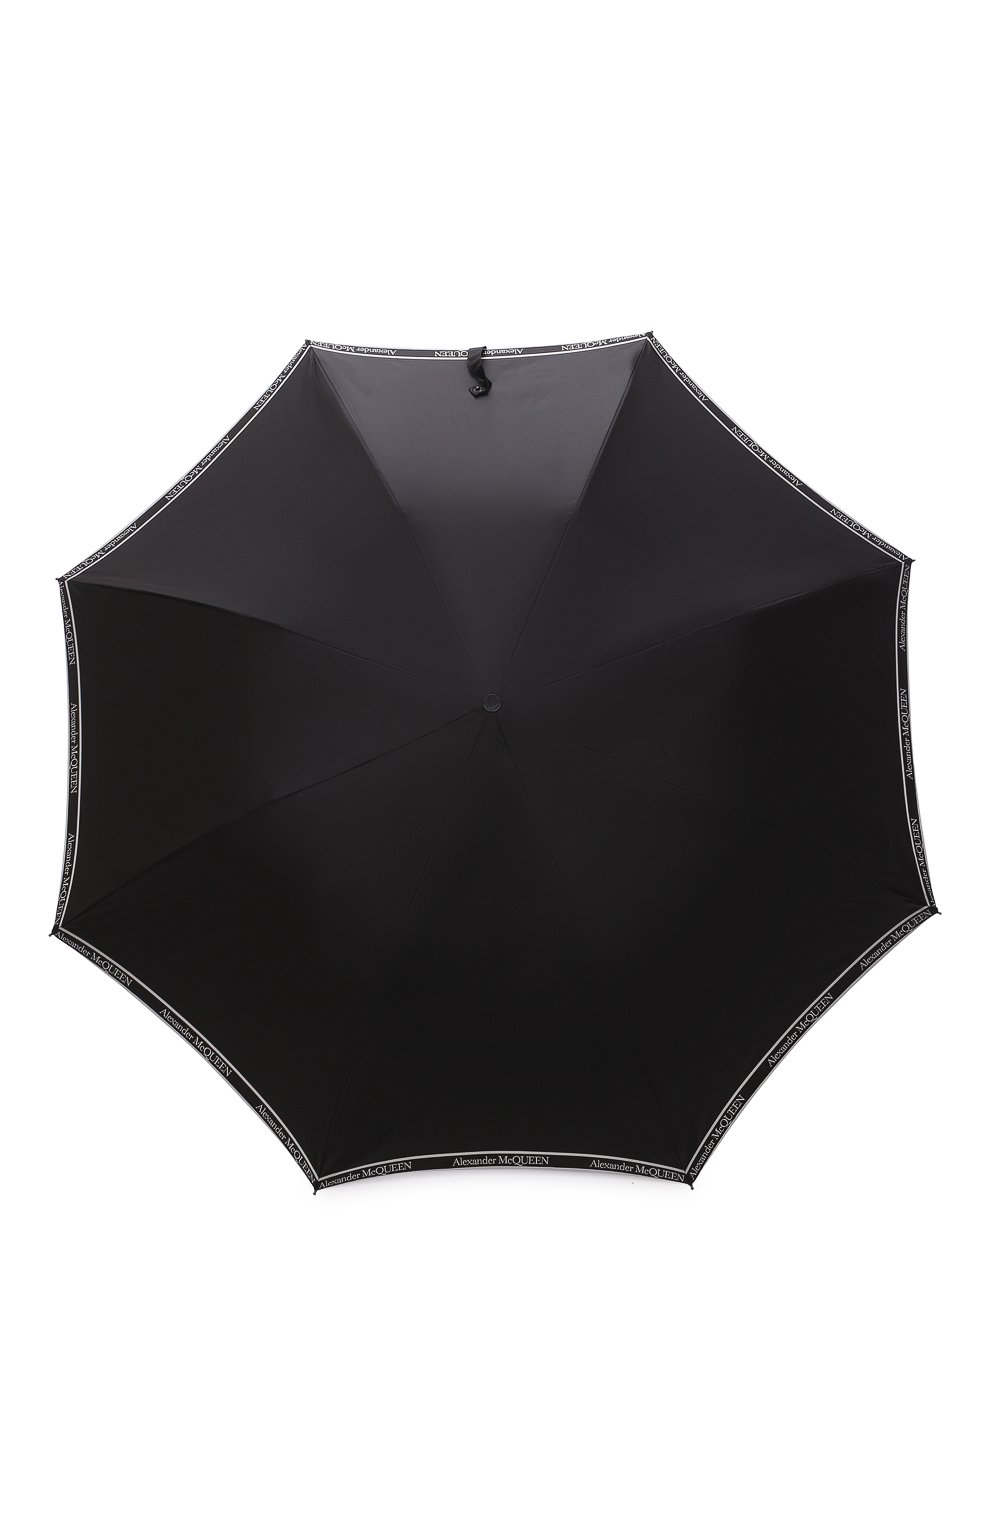 Мужской складной зонт ALEXANDER MCQUEEN черного цвета, арт. 557708/4D49Q | Фото 1 (Материал: Текстиль, Синтетический материал, Металл)